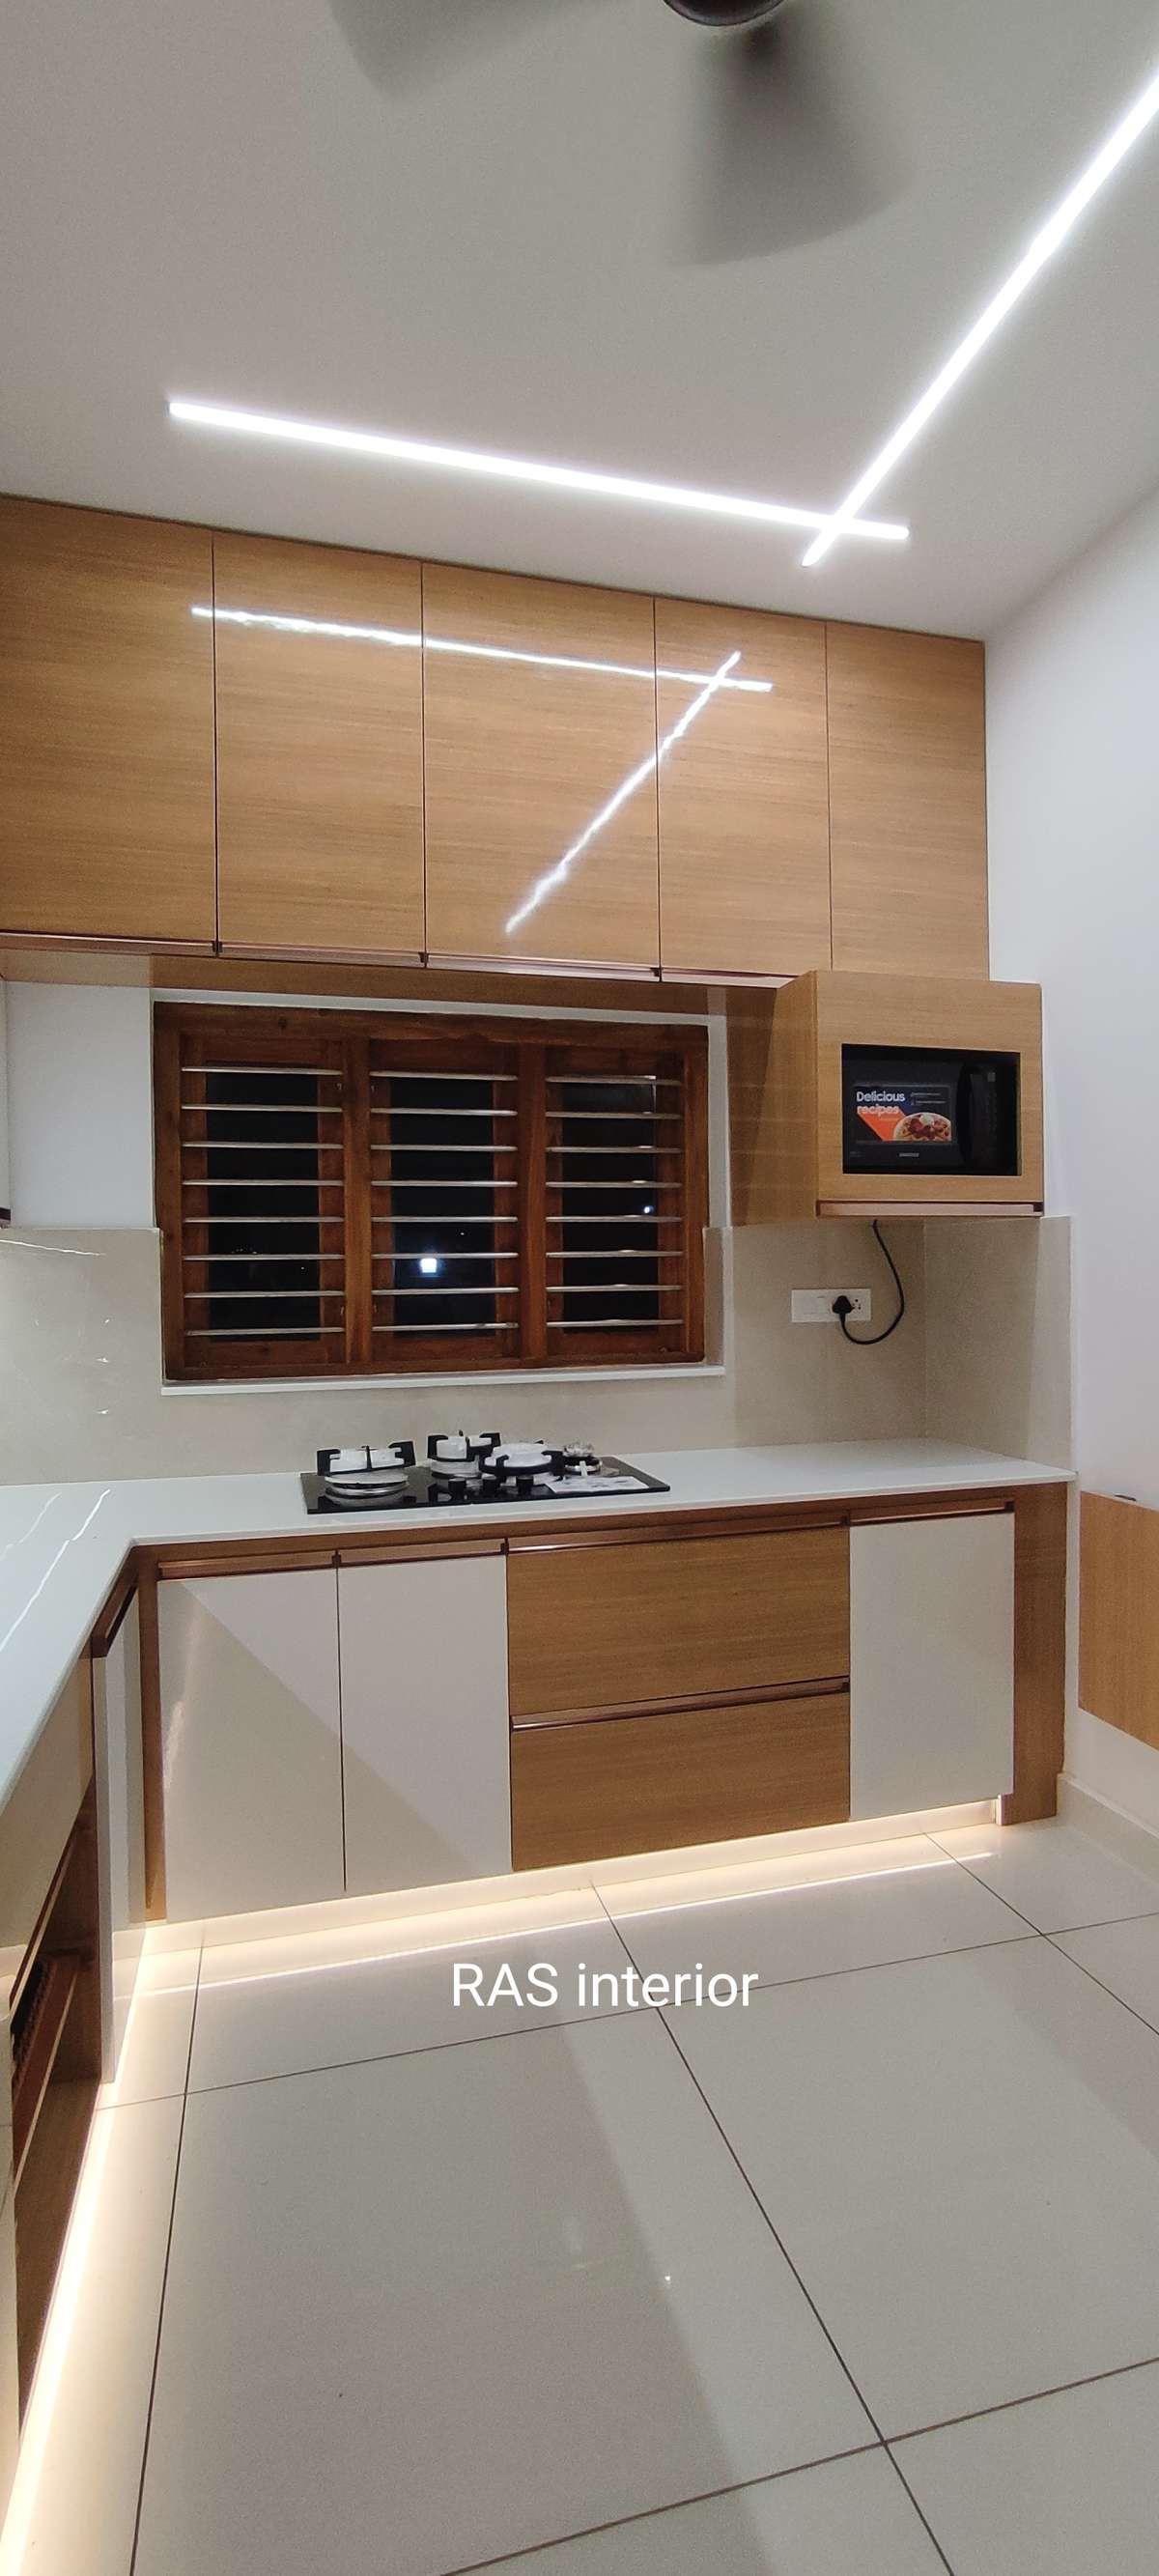 Kitchen, Lighting, Storage Designs by Interior Designer RAS interior, Palakkad | Kolo